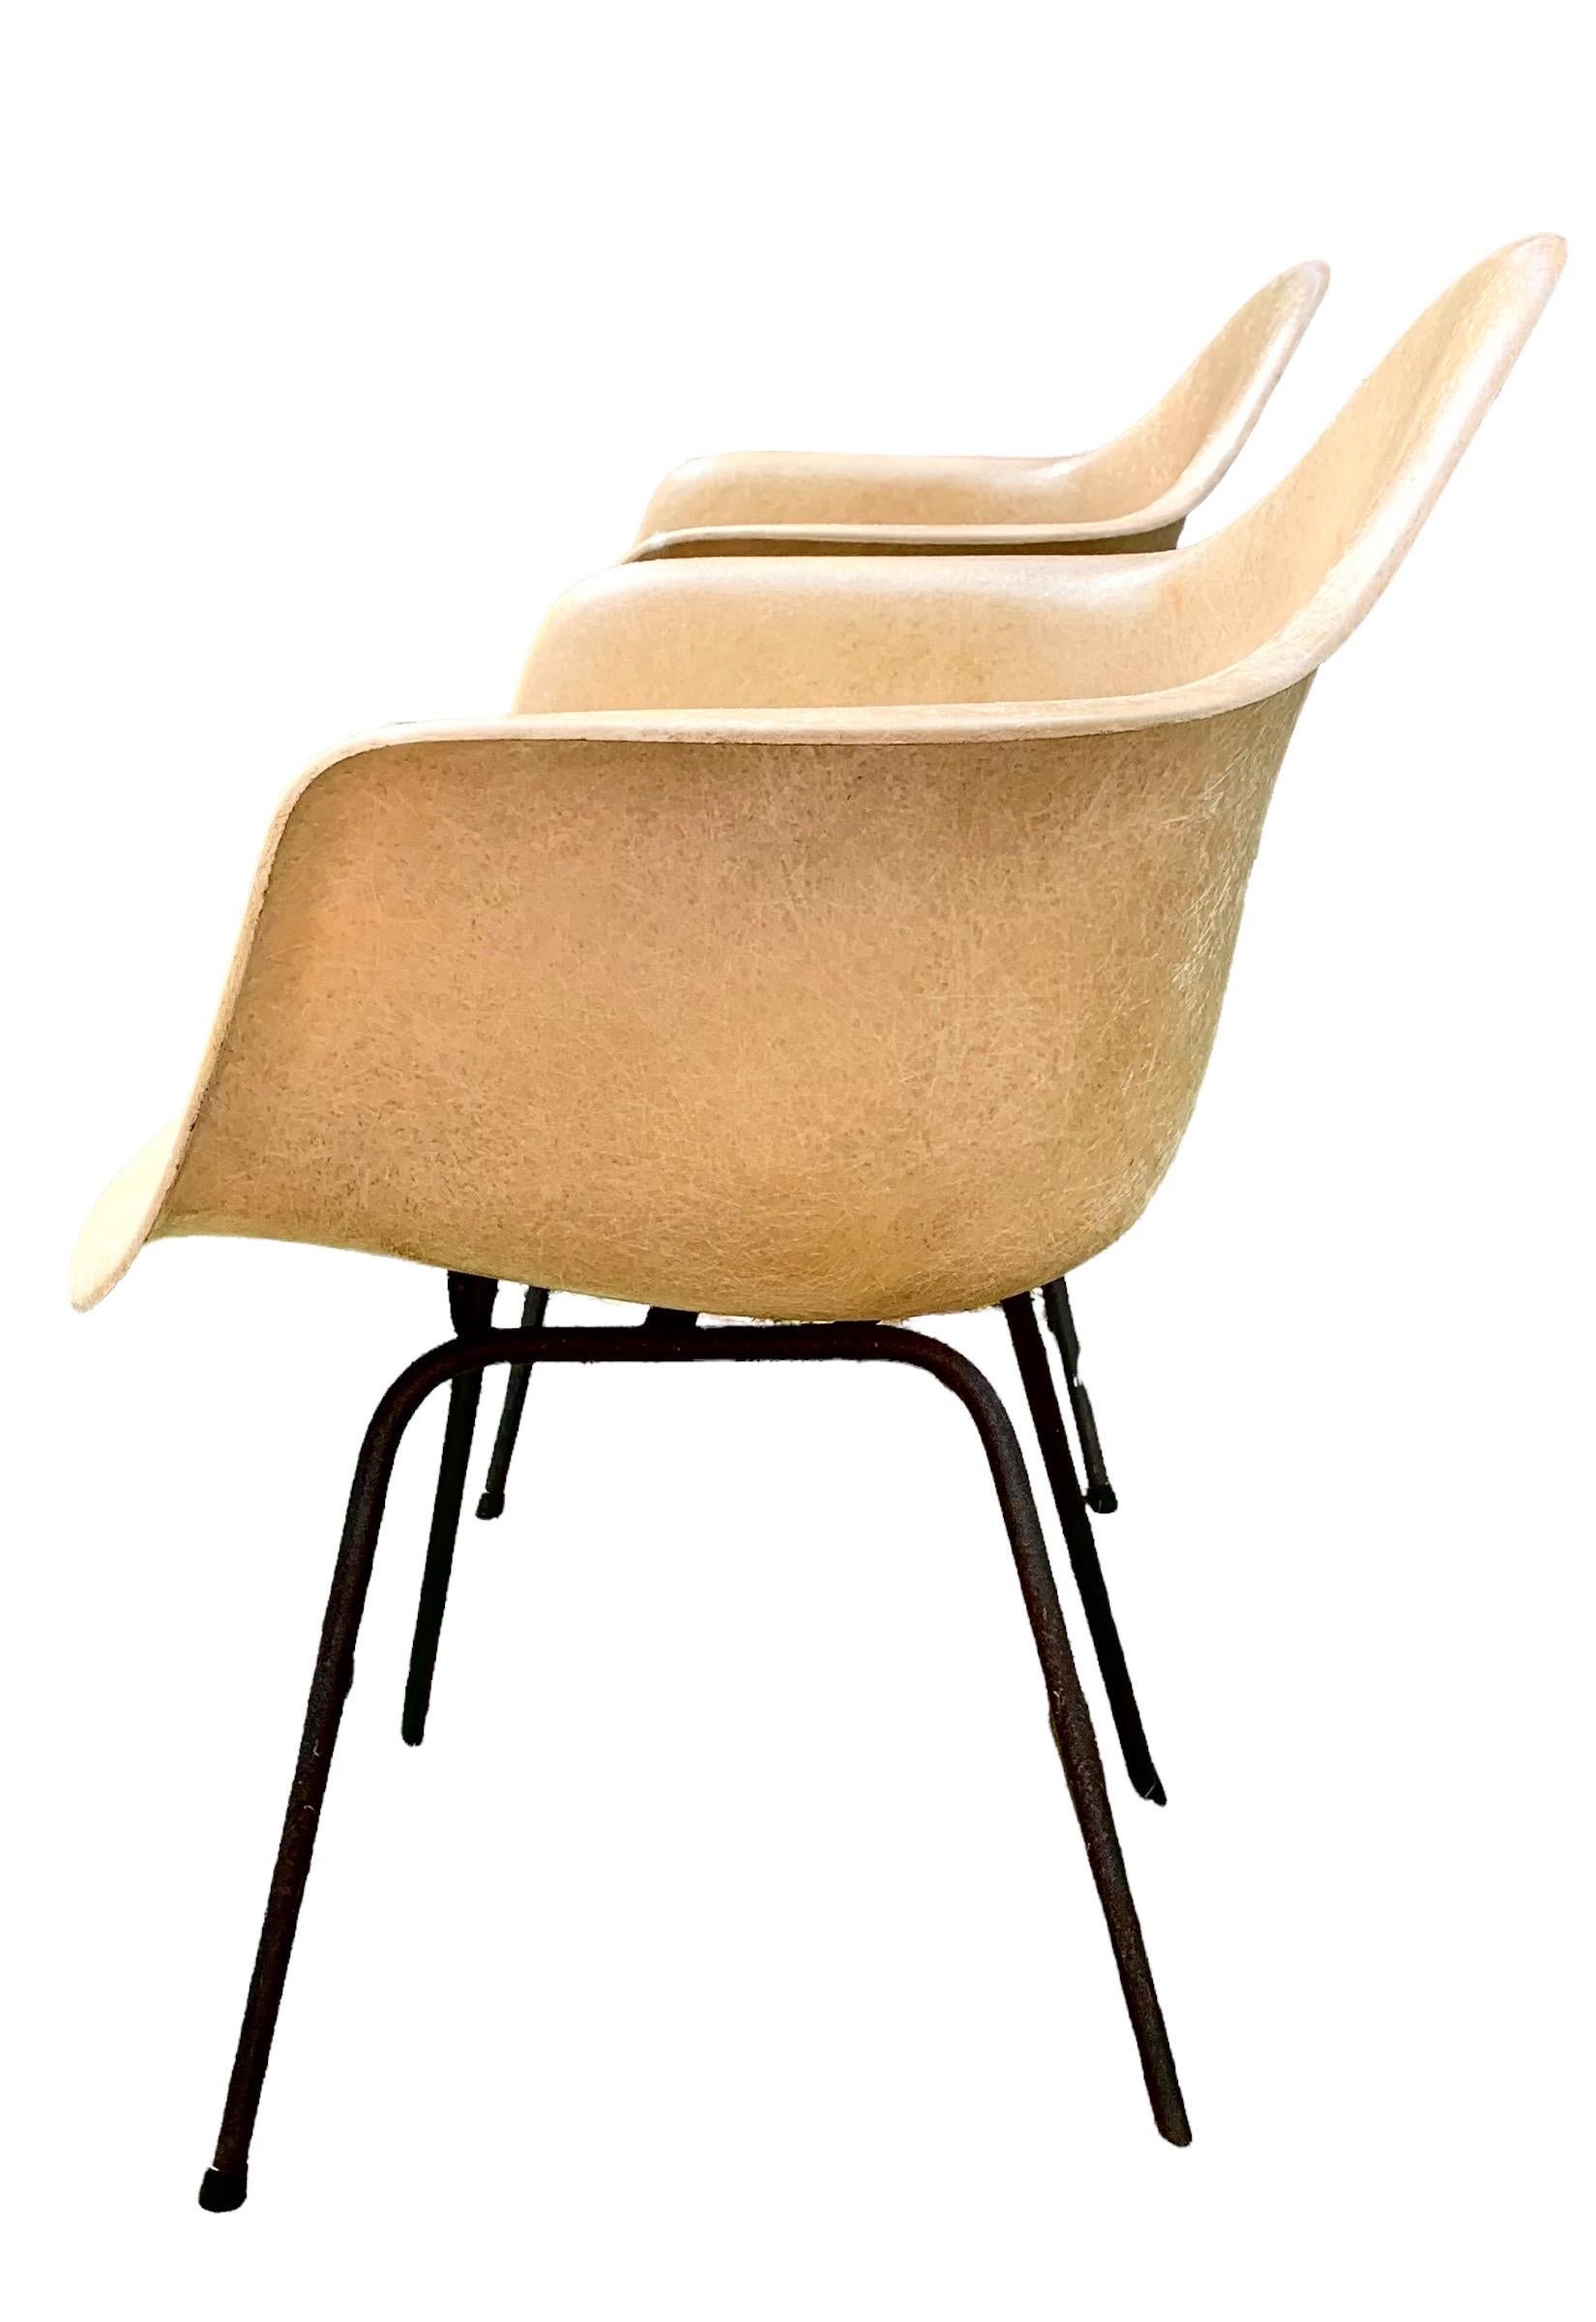 Une paire de chaises à accoudoirs en fibre de verre moulée de Charles Eames pour Herman Miller, de couleur parchemin avec étiquettes originales en papier, produites entre 1951 et 1955. 
Née des premières recherches de Charles et d'Eero Saarinen sur